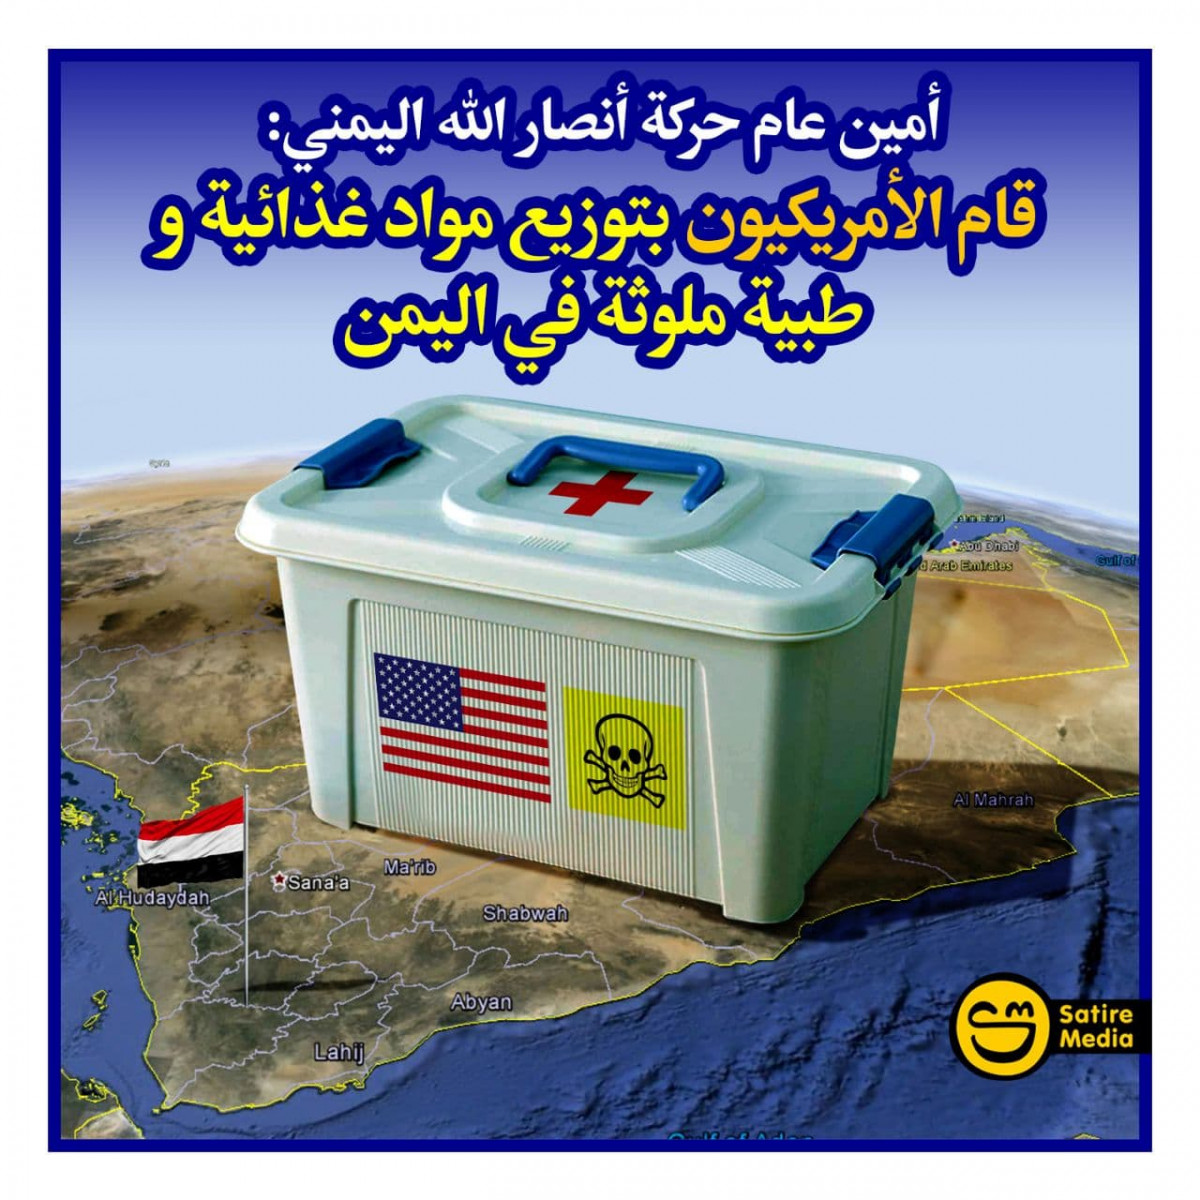 قام الأمريكيون بتوزيع مواد غذائية وطبية ملوثة في اليمن